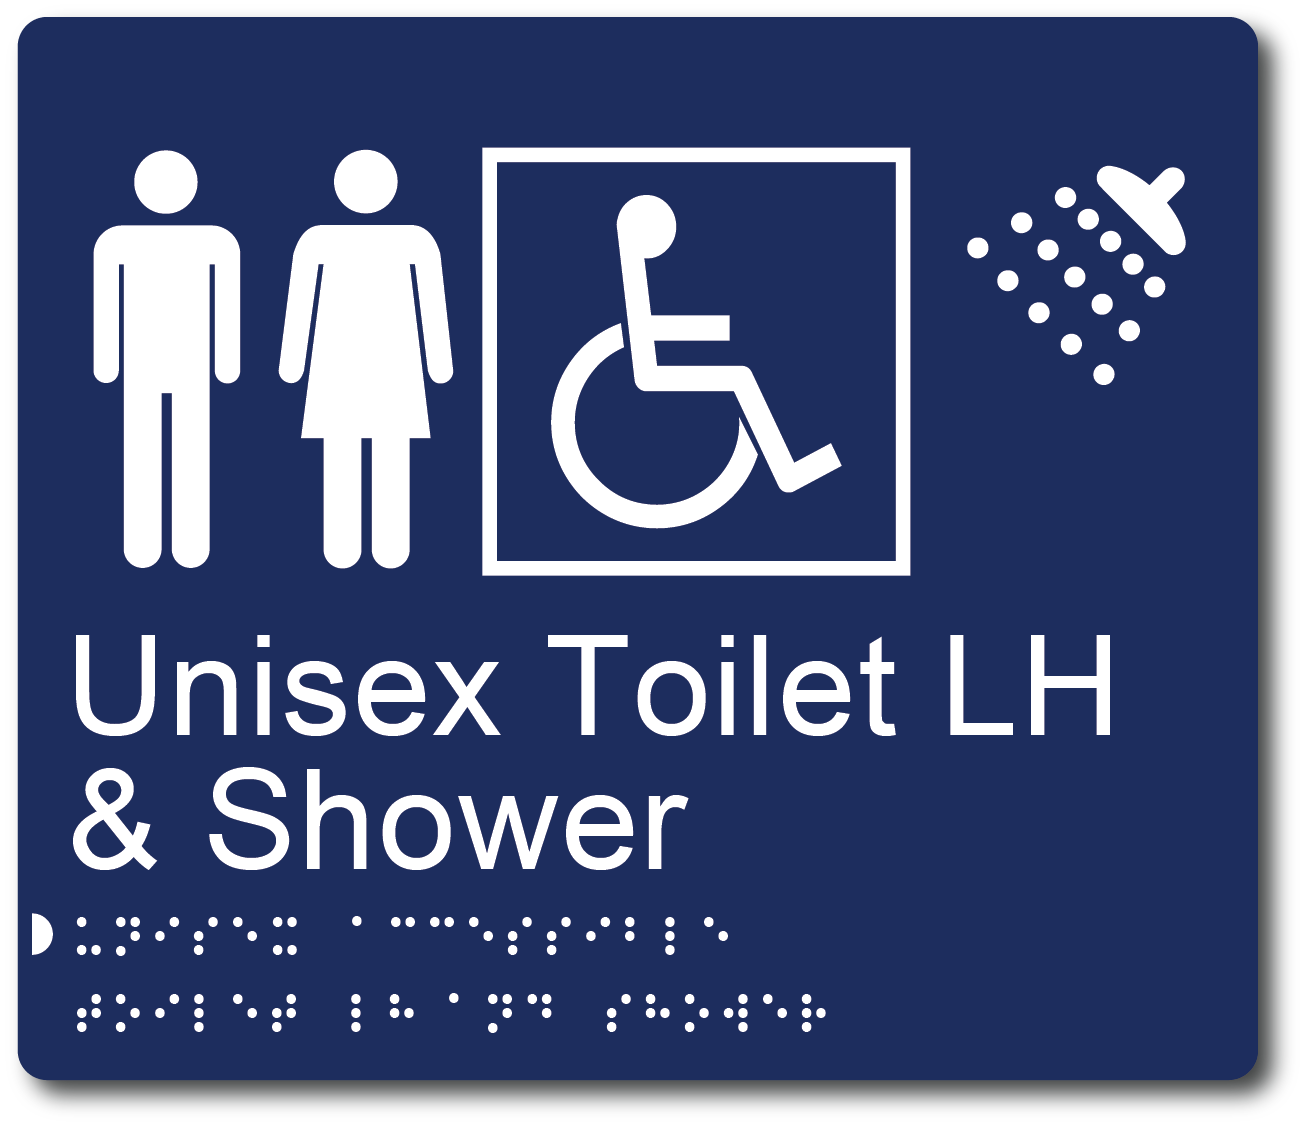 Unisex Toilet LH & Shower